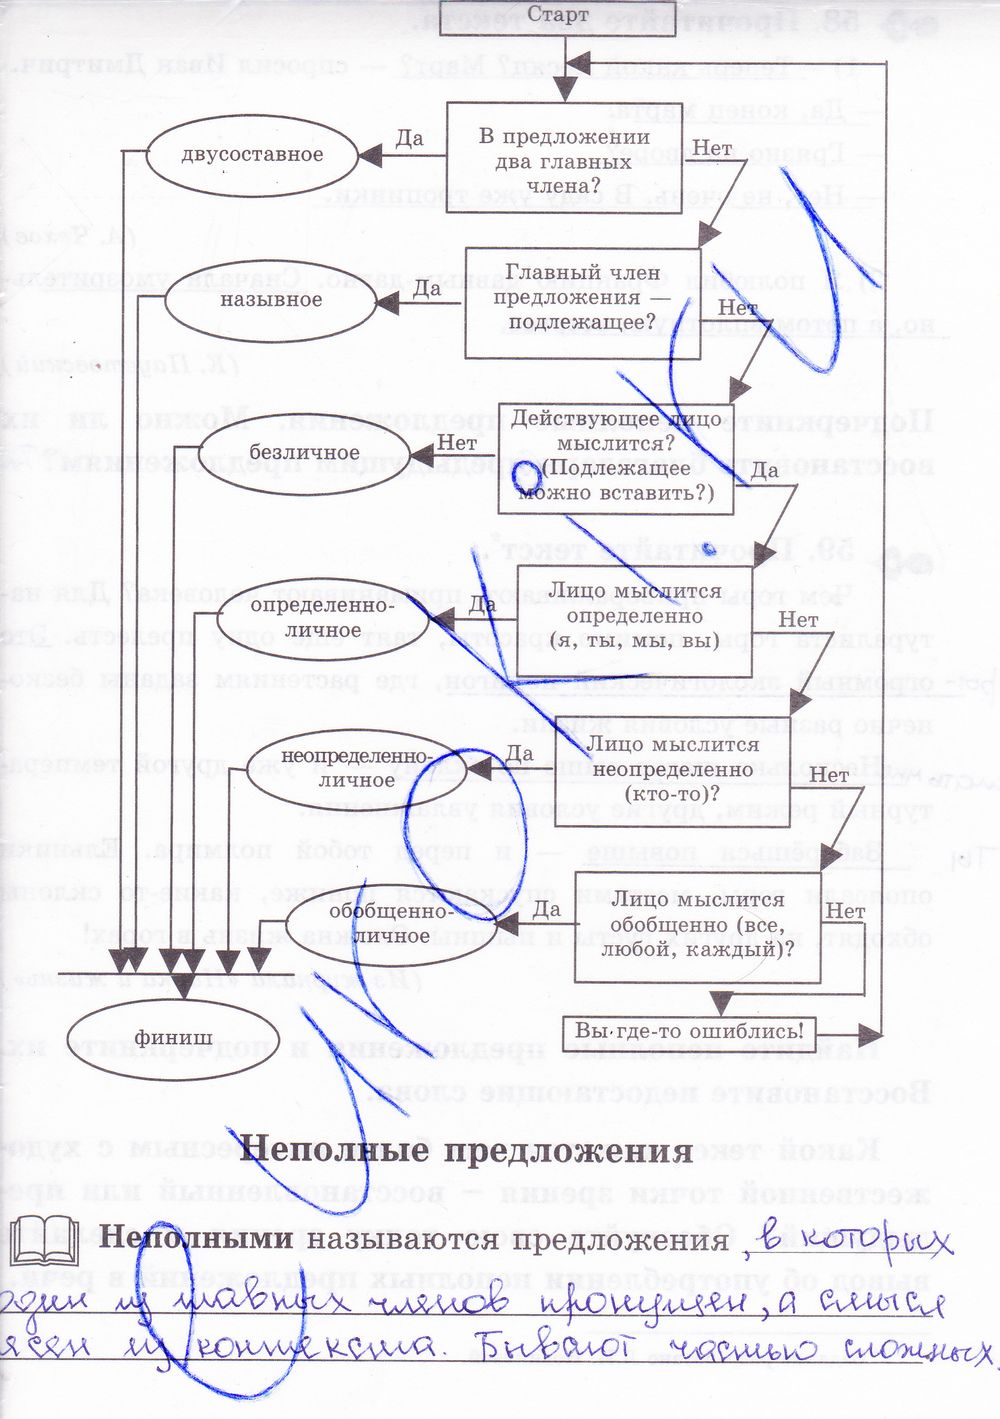 ГДЗ Русский язык 8 класс - стр. 55